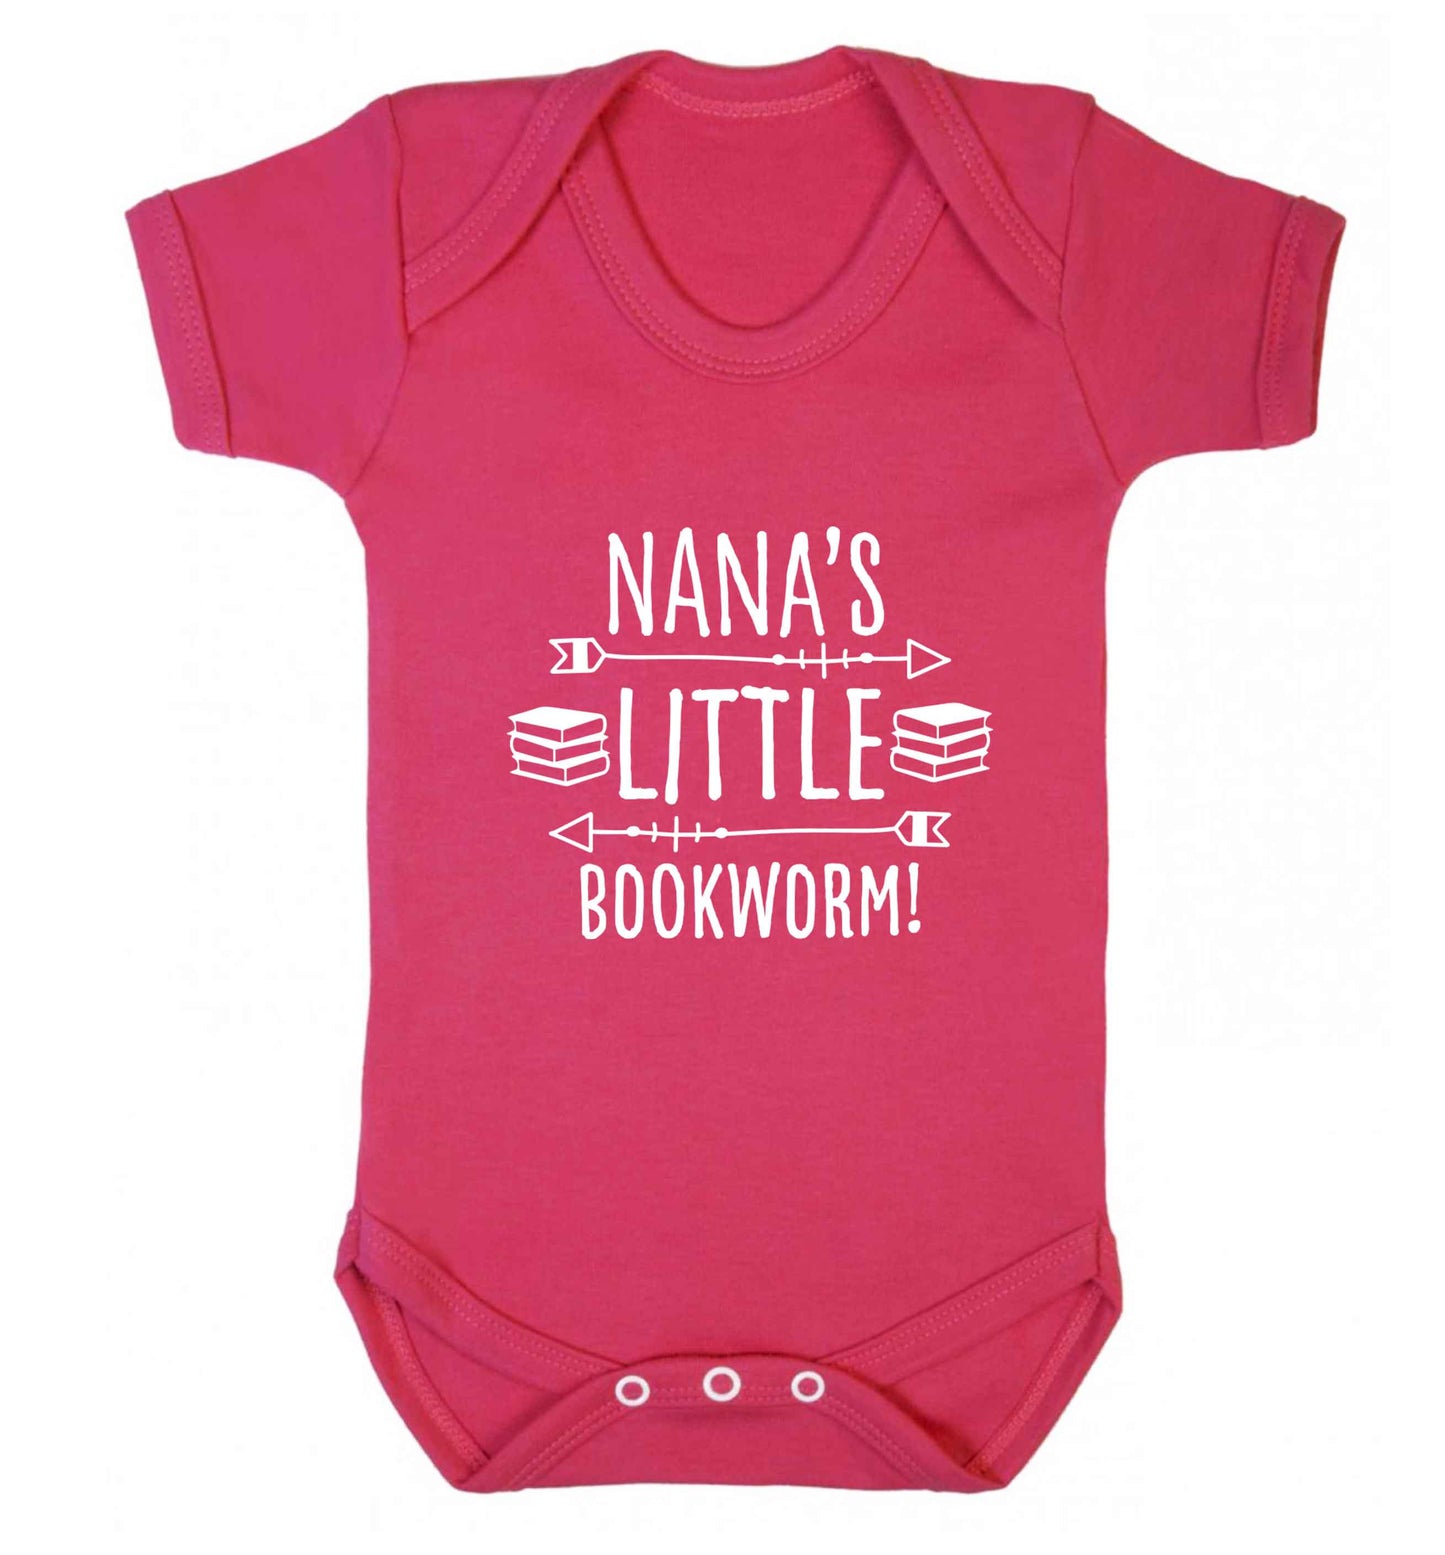 Nana's little bookworm baby vest dark pink 18-24 months